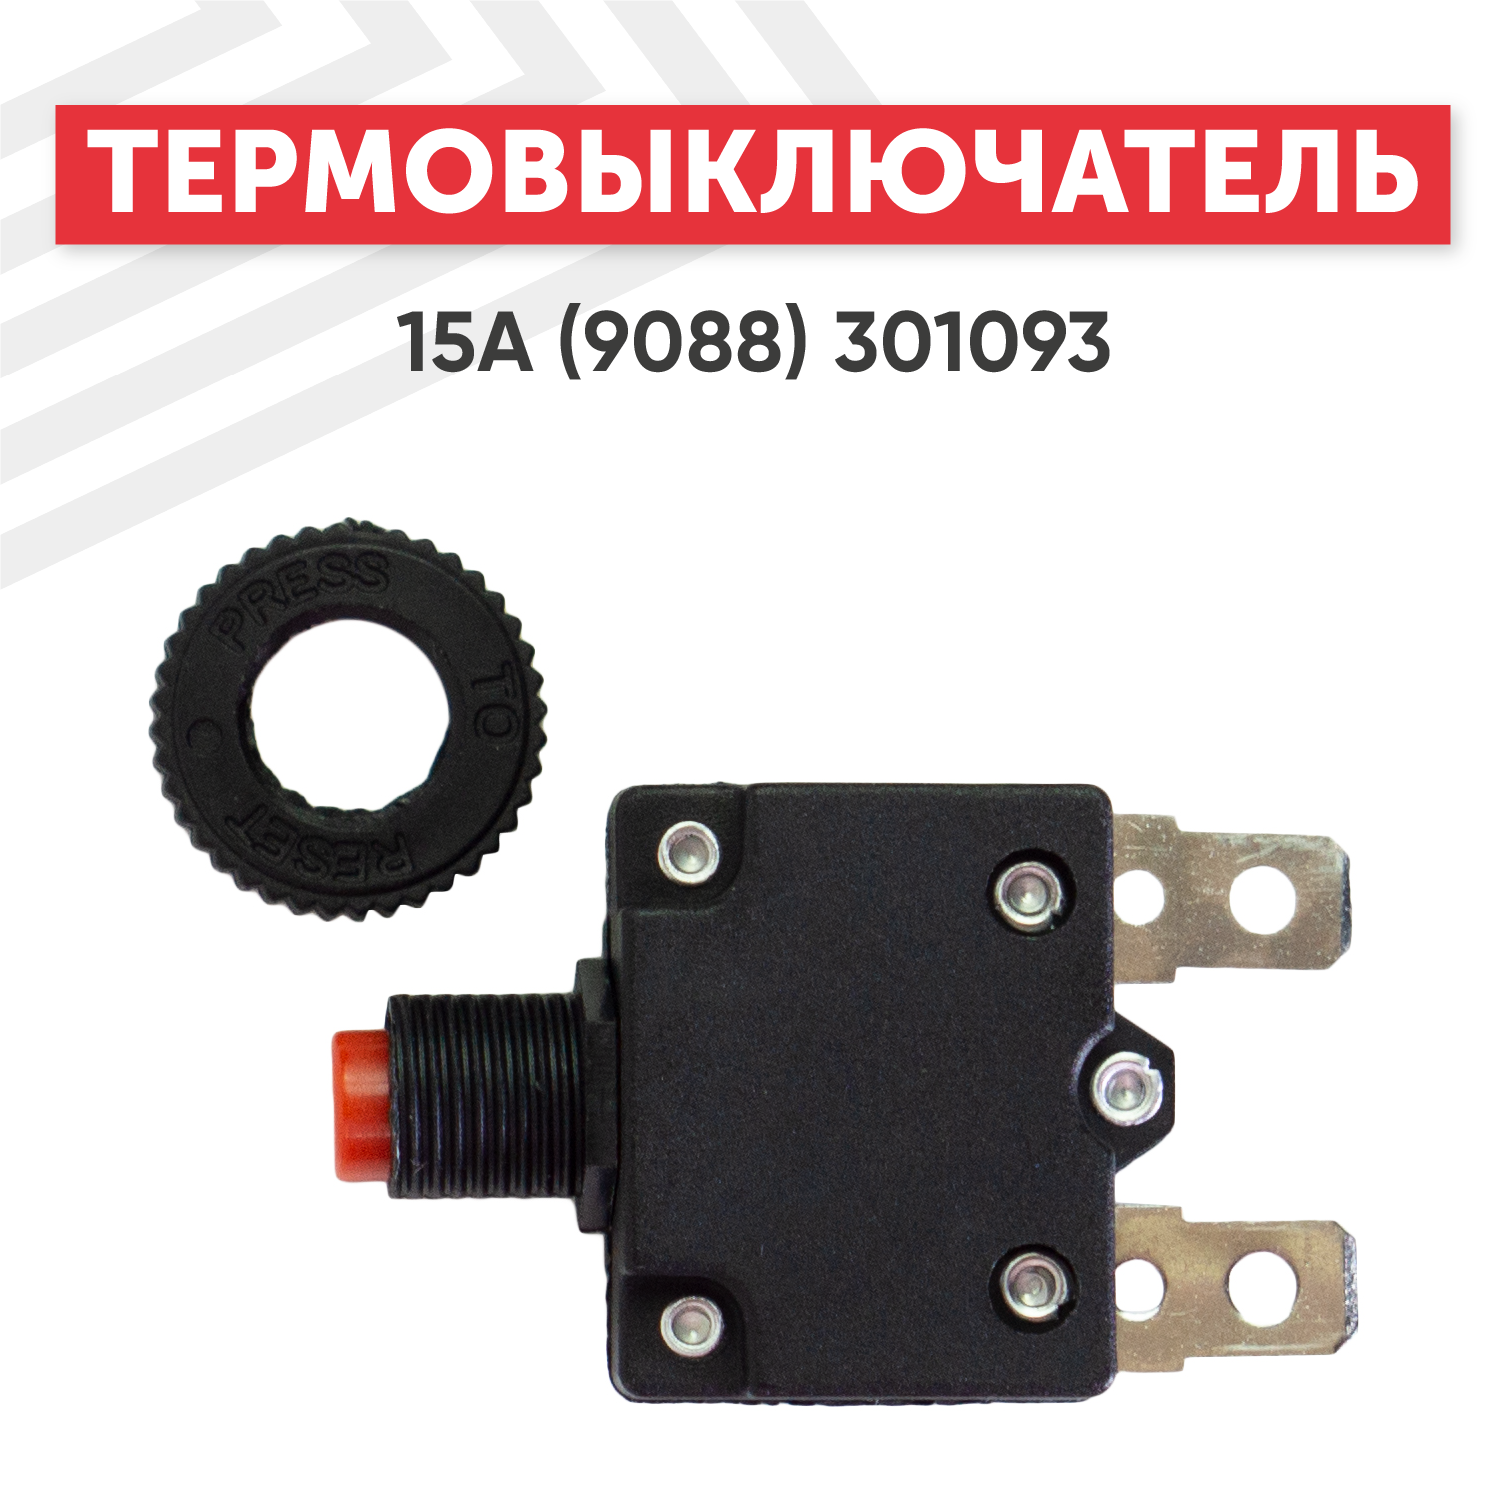 Термовыключатель 15A для электроинструмента (9088), 301093